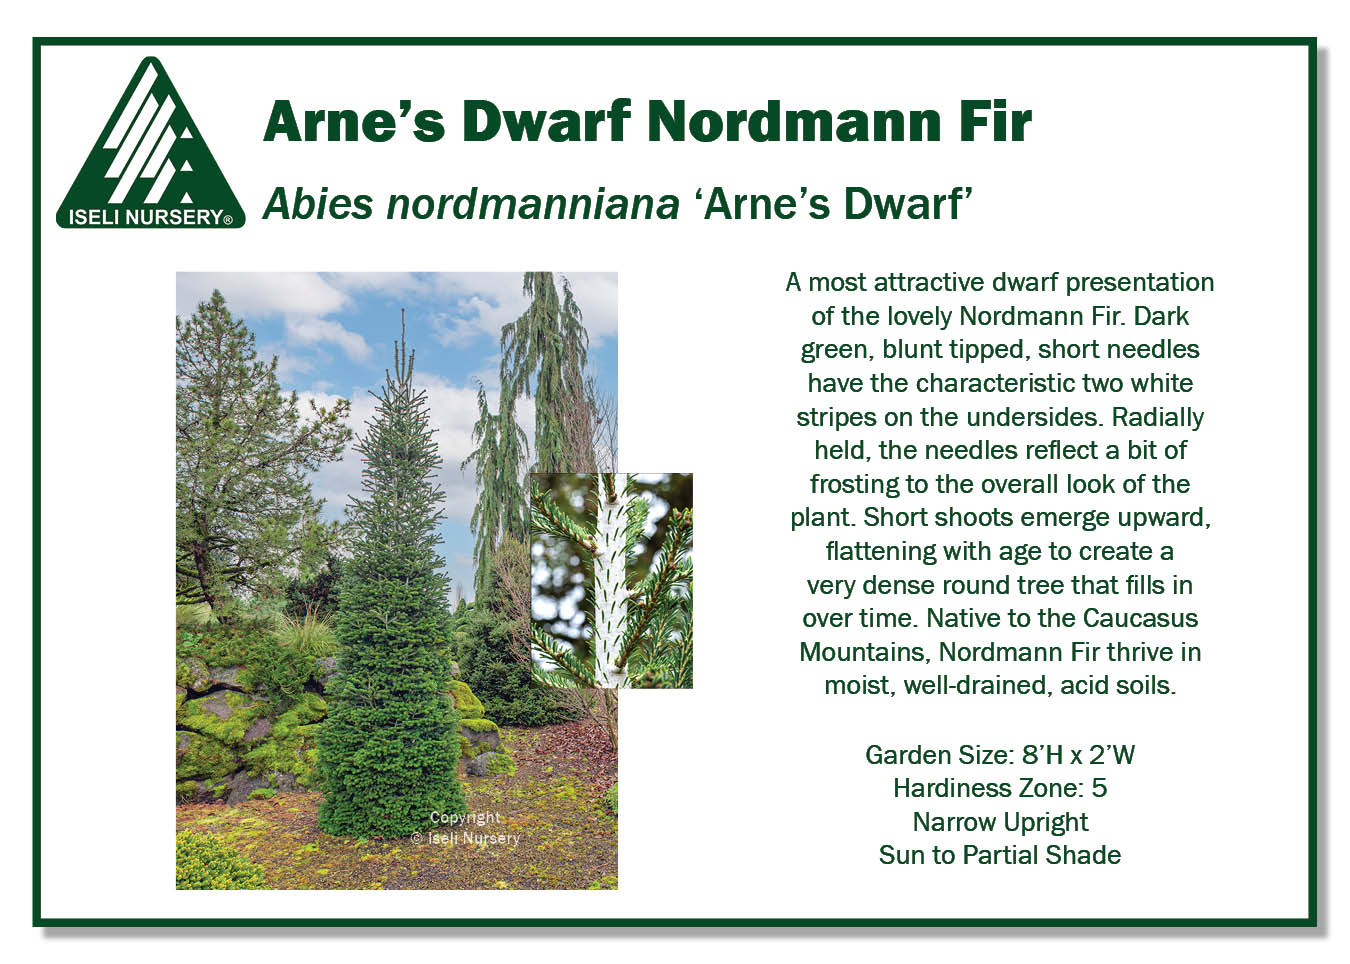 Abies nordmanniana 'Arne's Dwarf' - Iseli Nursery